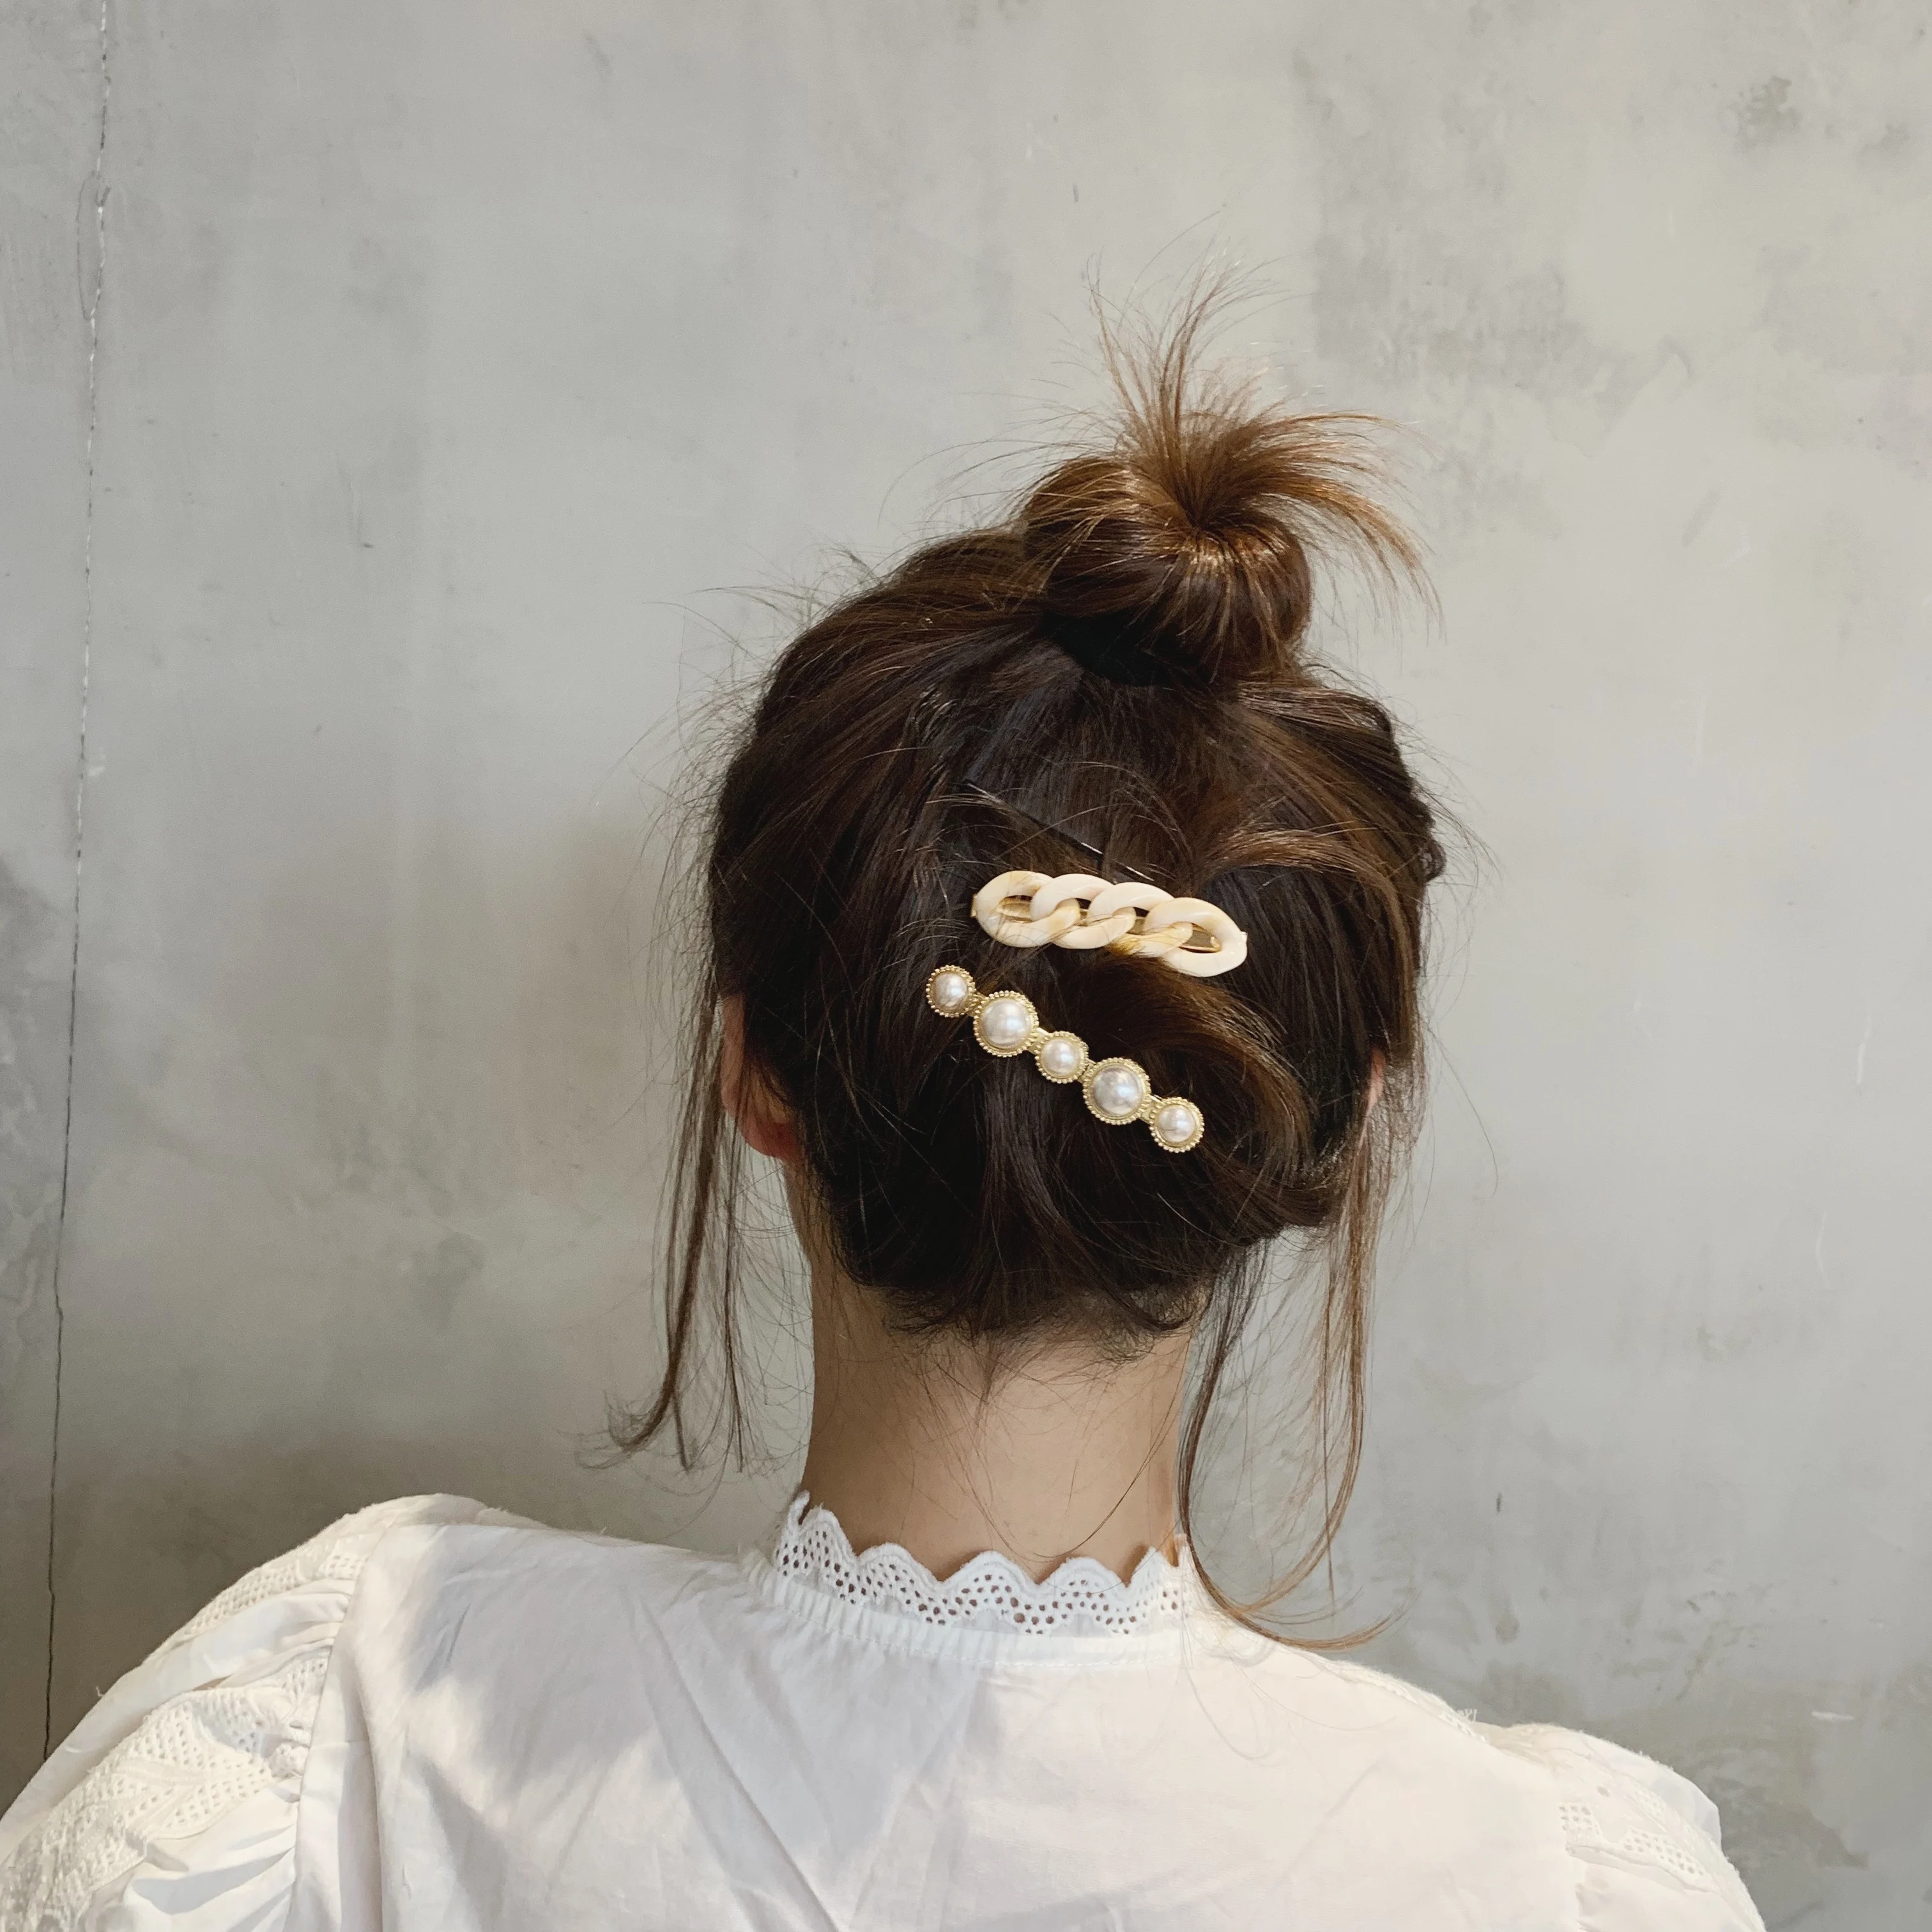 AOMU 1 комплект, корейская мода, имитация шпильки с жемчугом, Женские винтажные акриловые заколки на цепочке, заколки для волос для девочек, аксессуары для волос, подарки